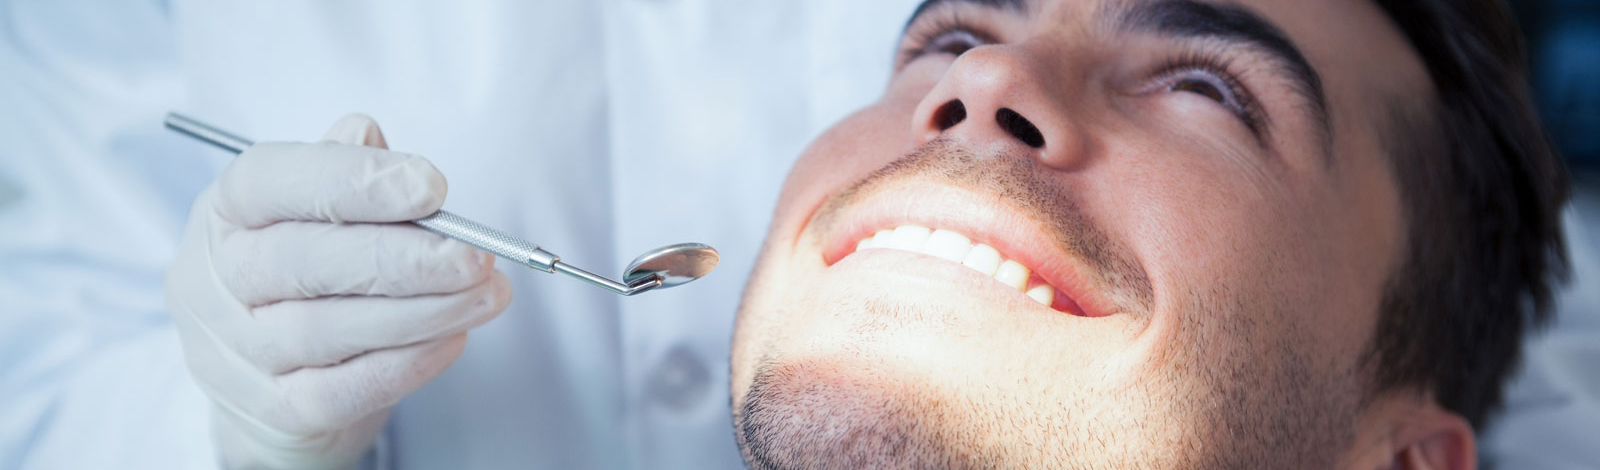 Chirurgie dentaire et dents de sagesse